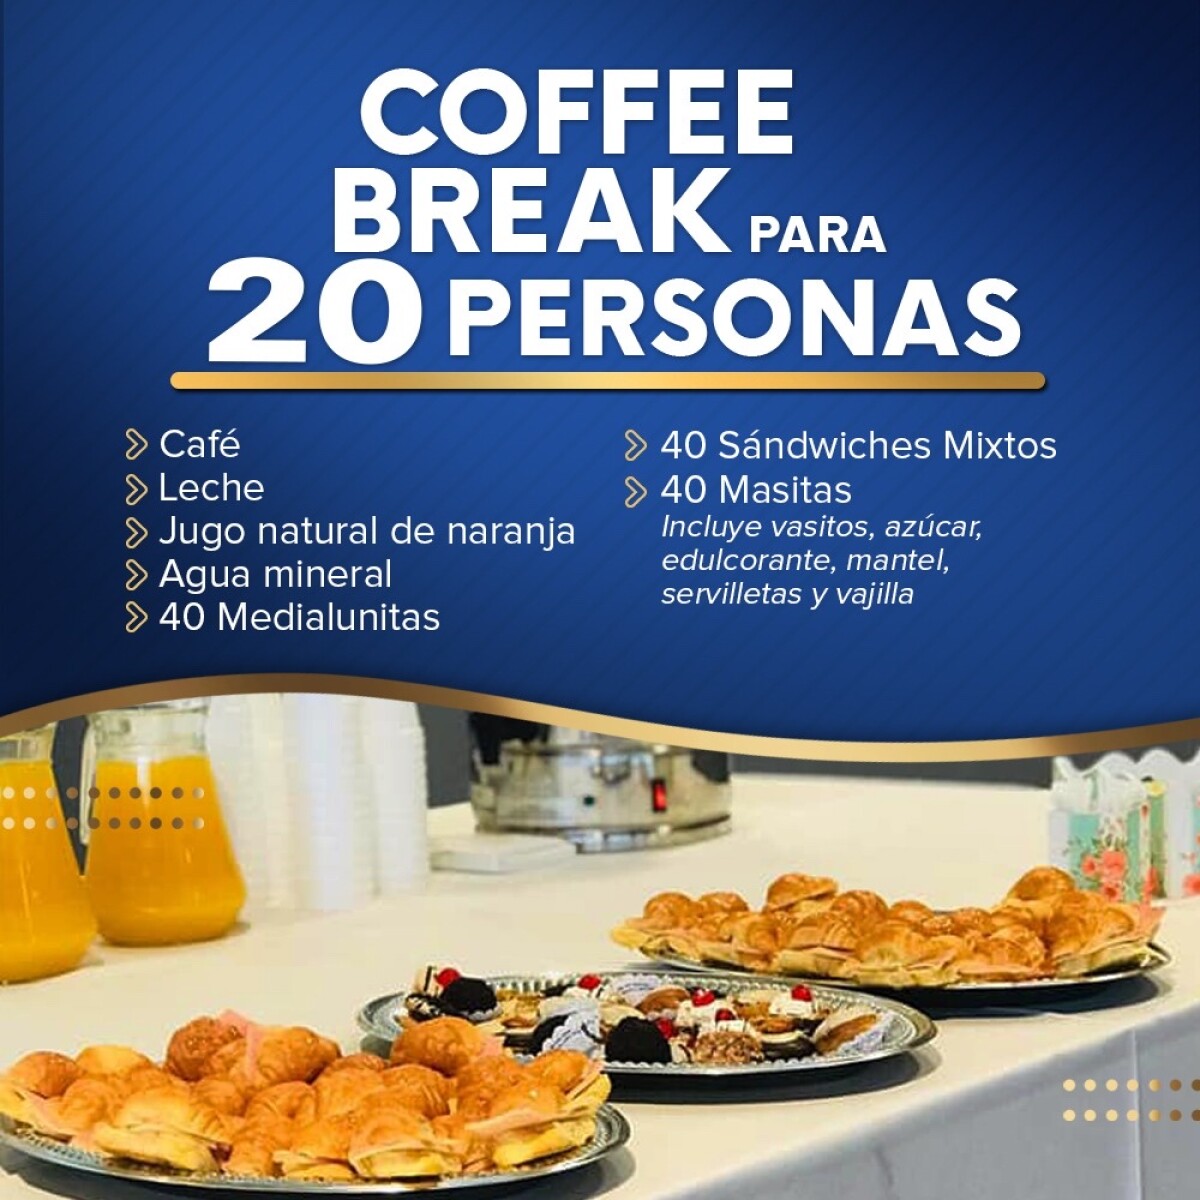 Coffee break para 20 personas 